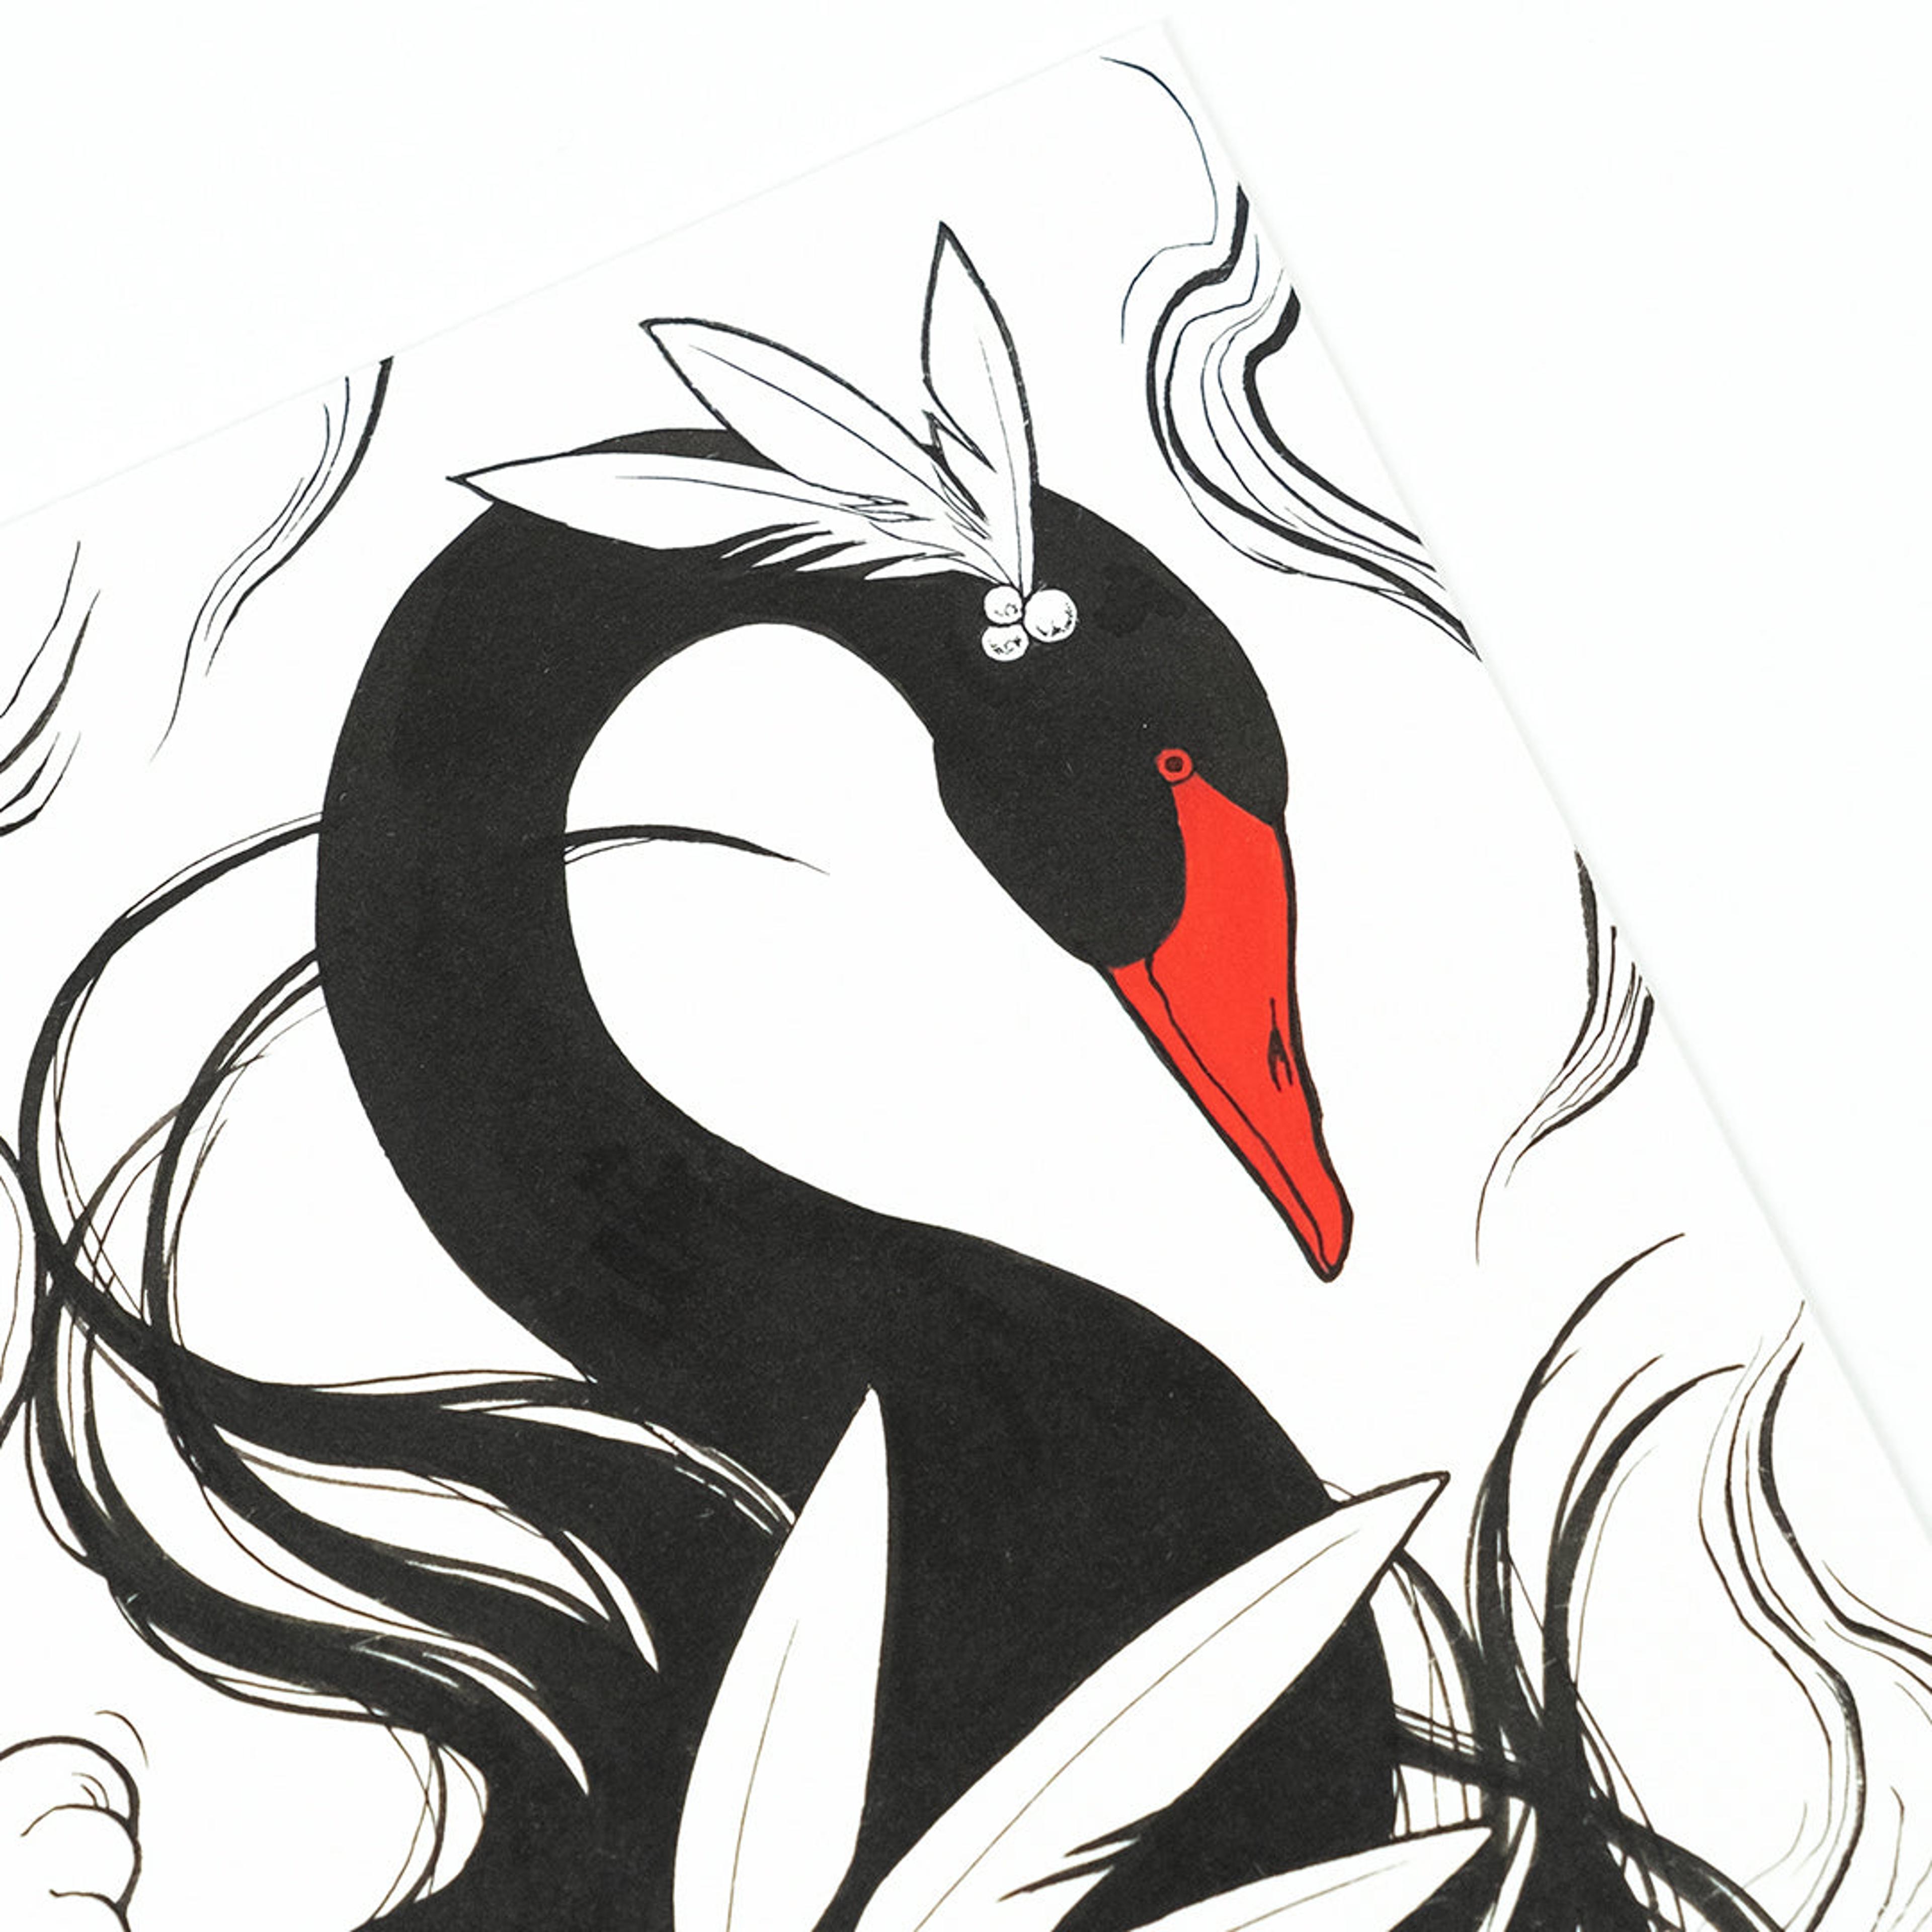 Alternate View 4 of Sister Black Swan Original Art